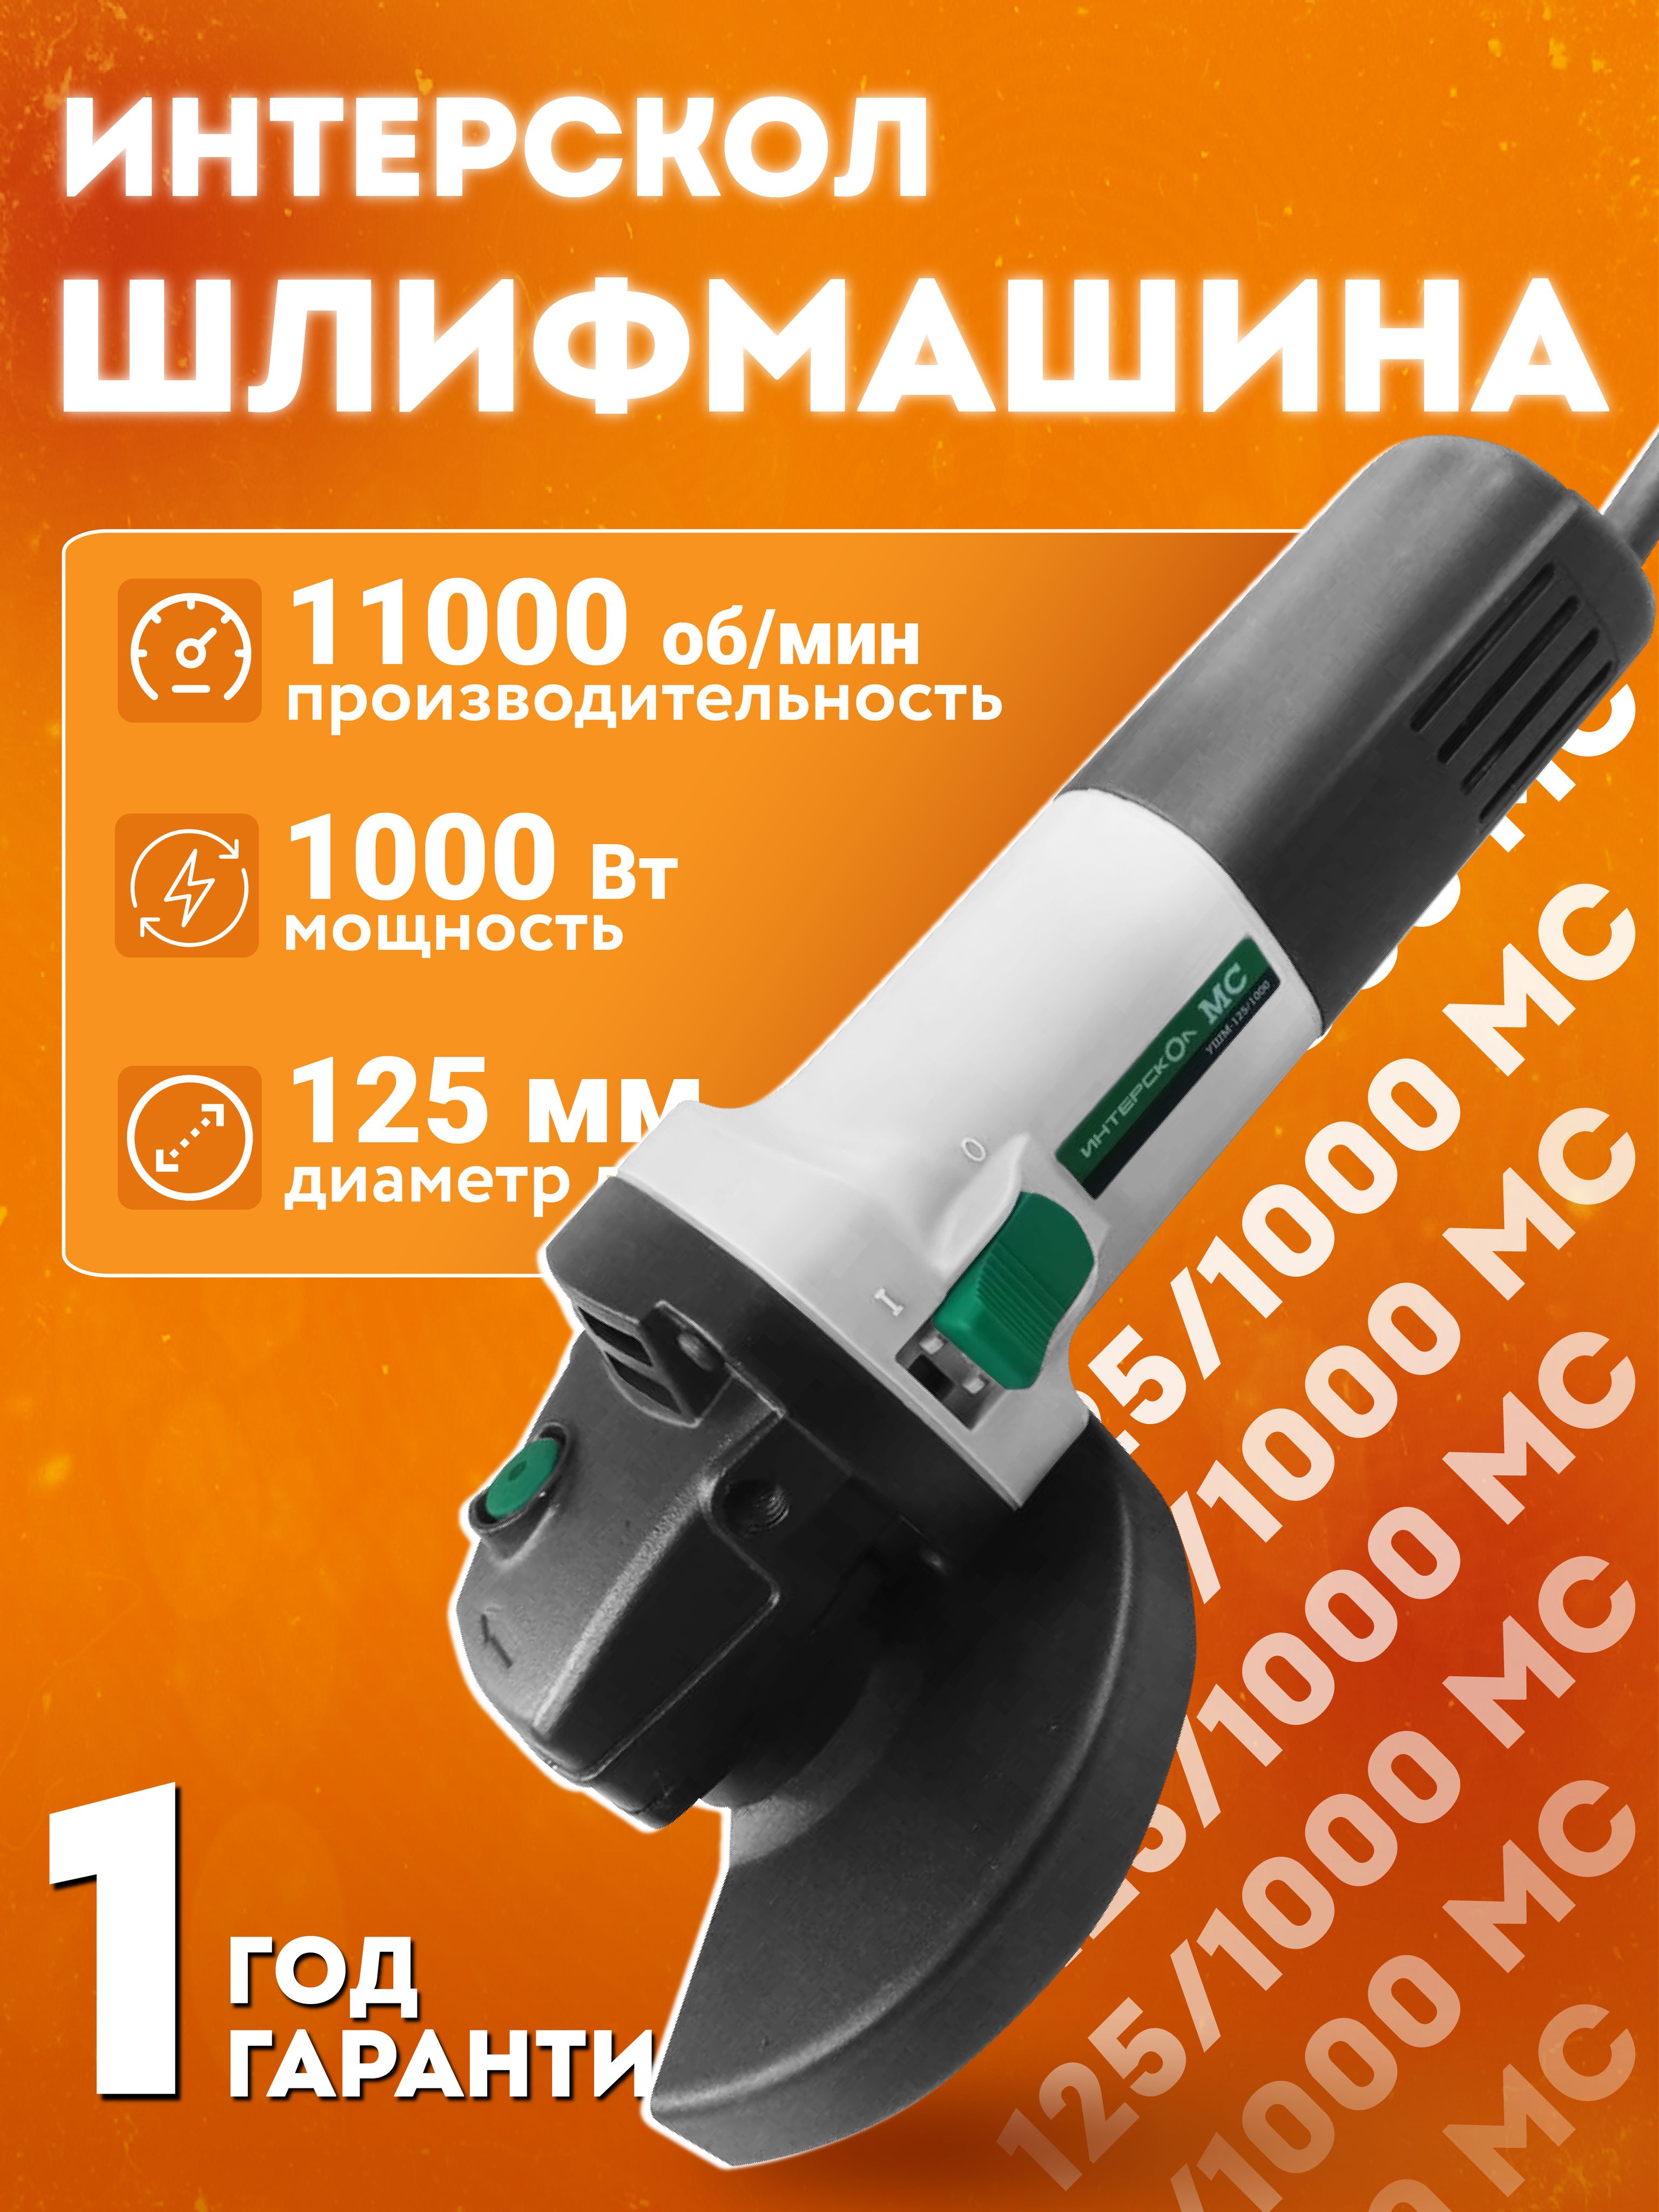 Ремонт электроинструмента Магнитогорск | ВКонтакте